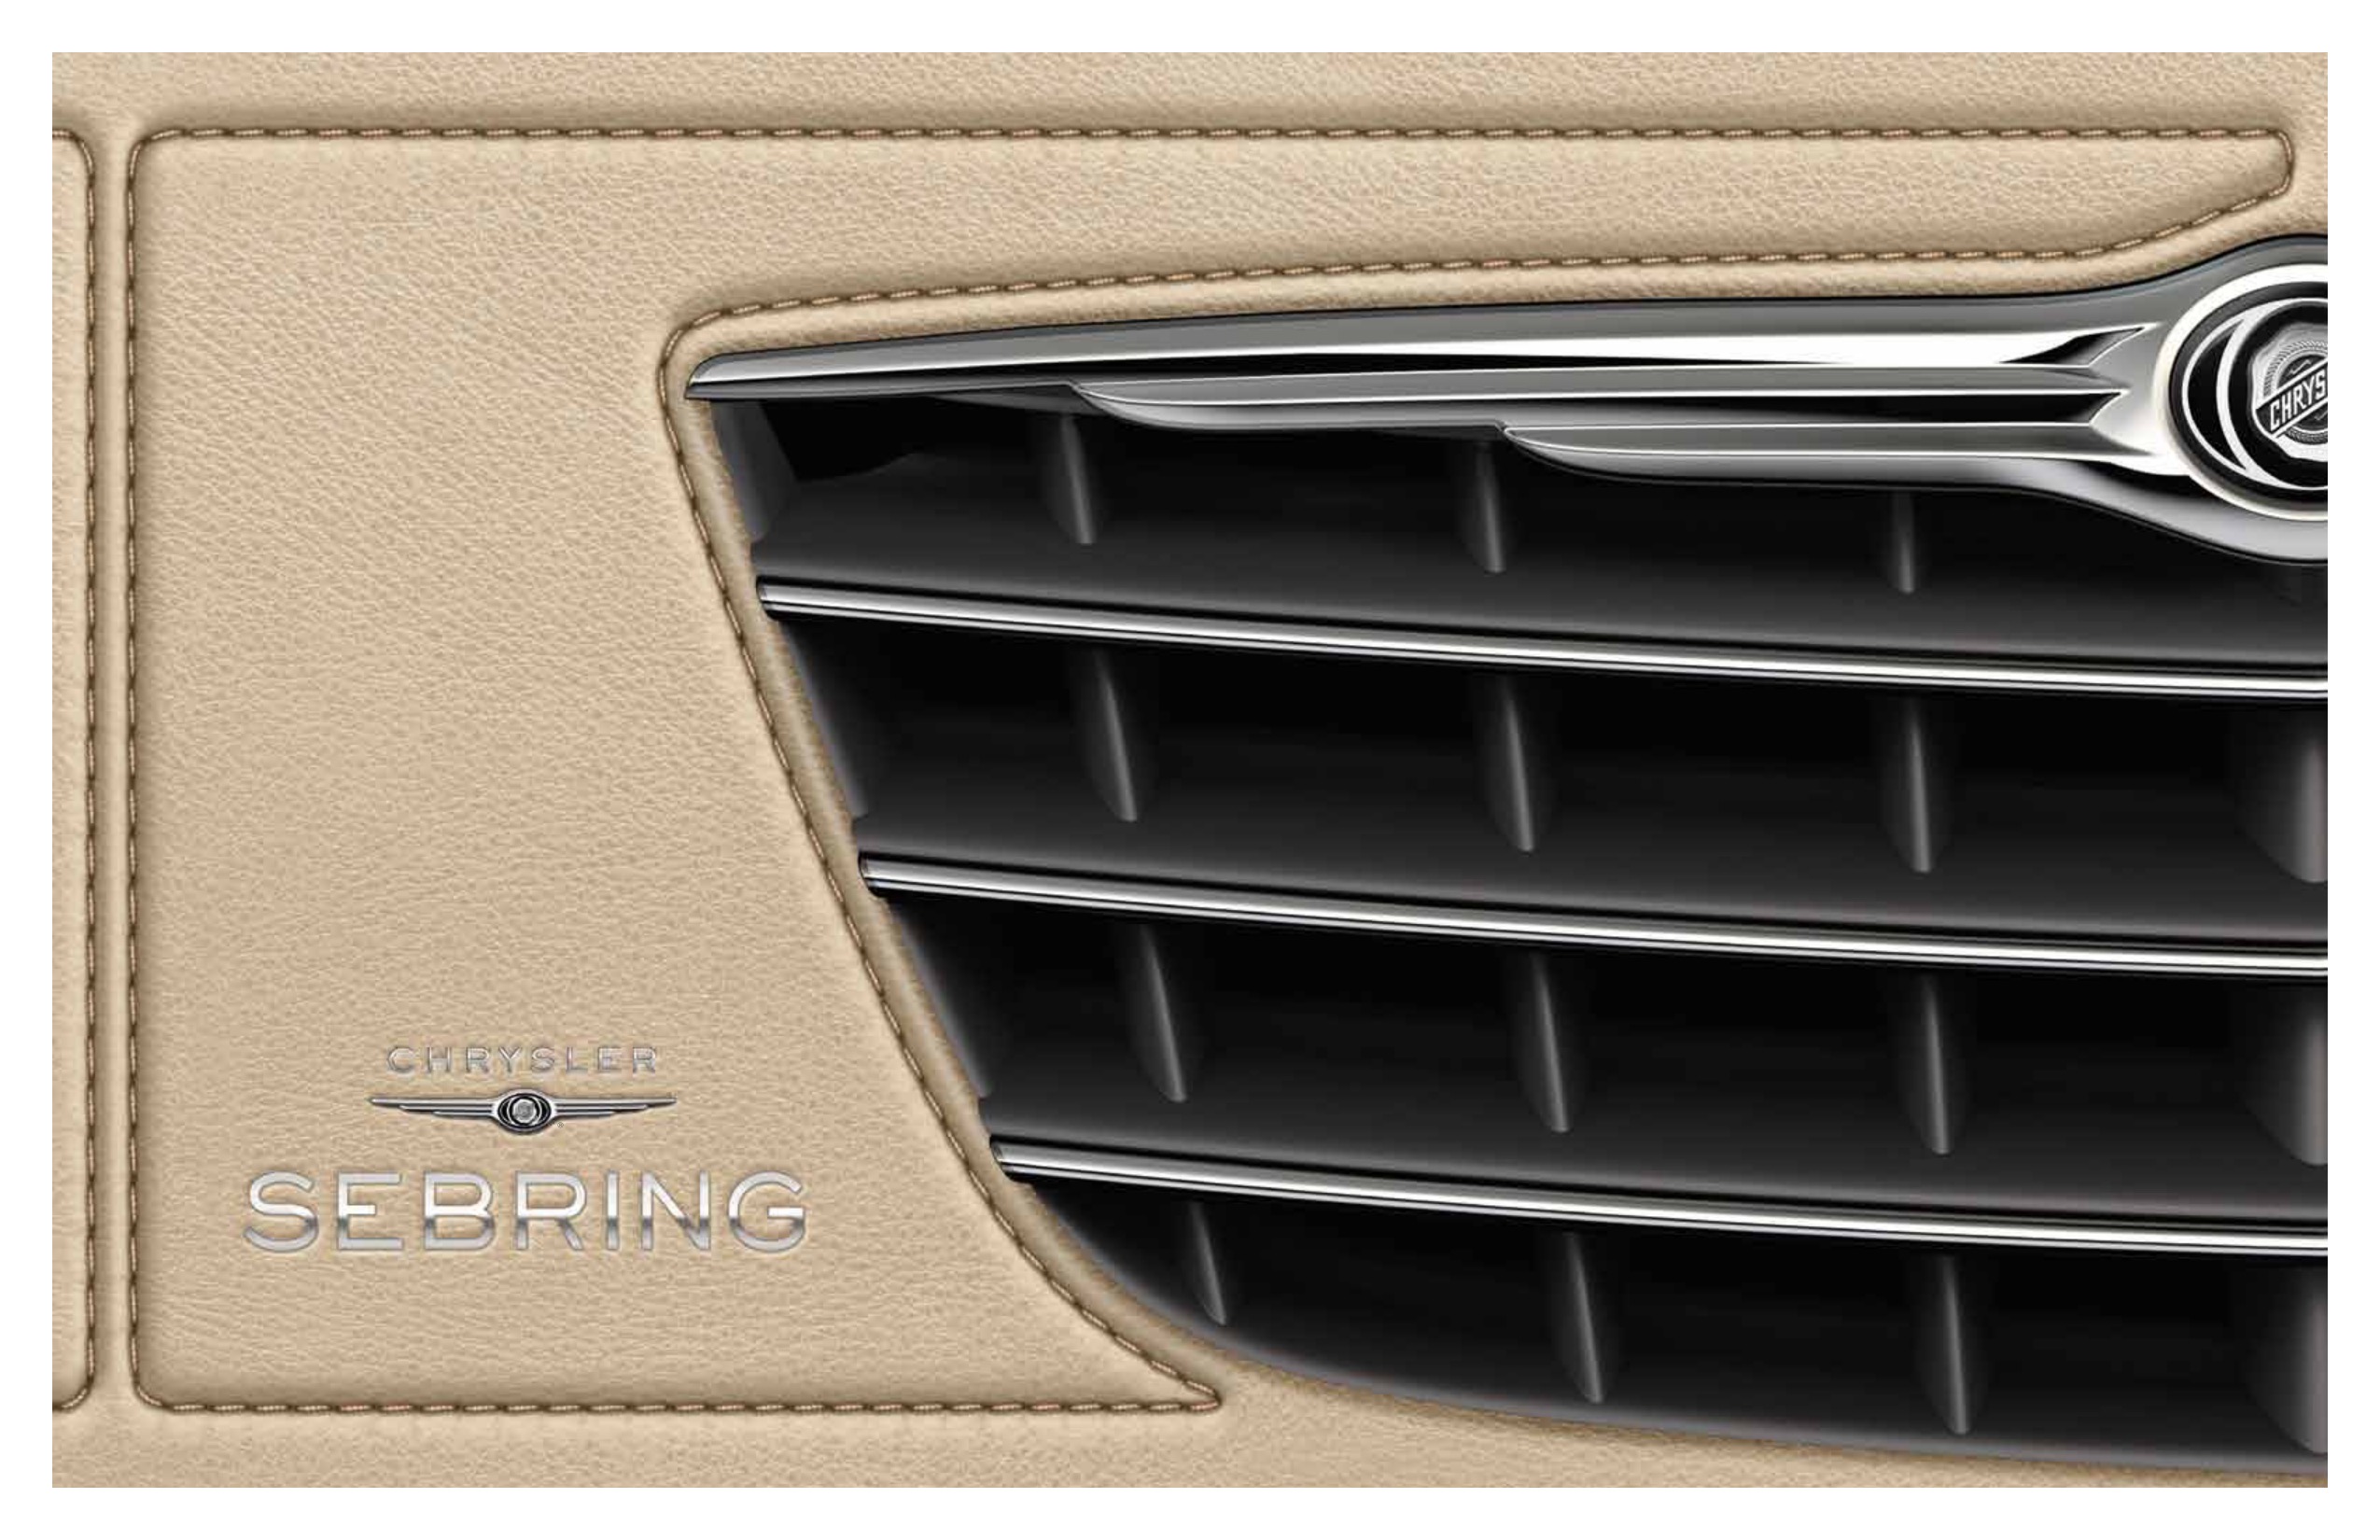 2010 Chrysler Sebring Brochure Page 5